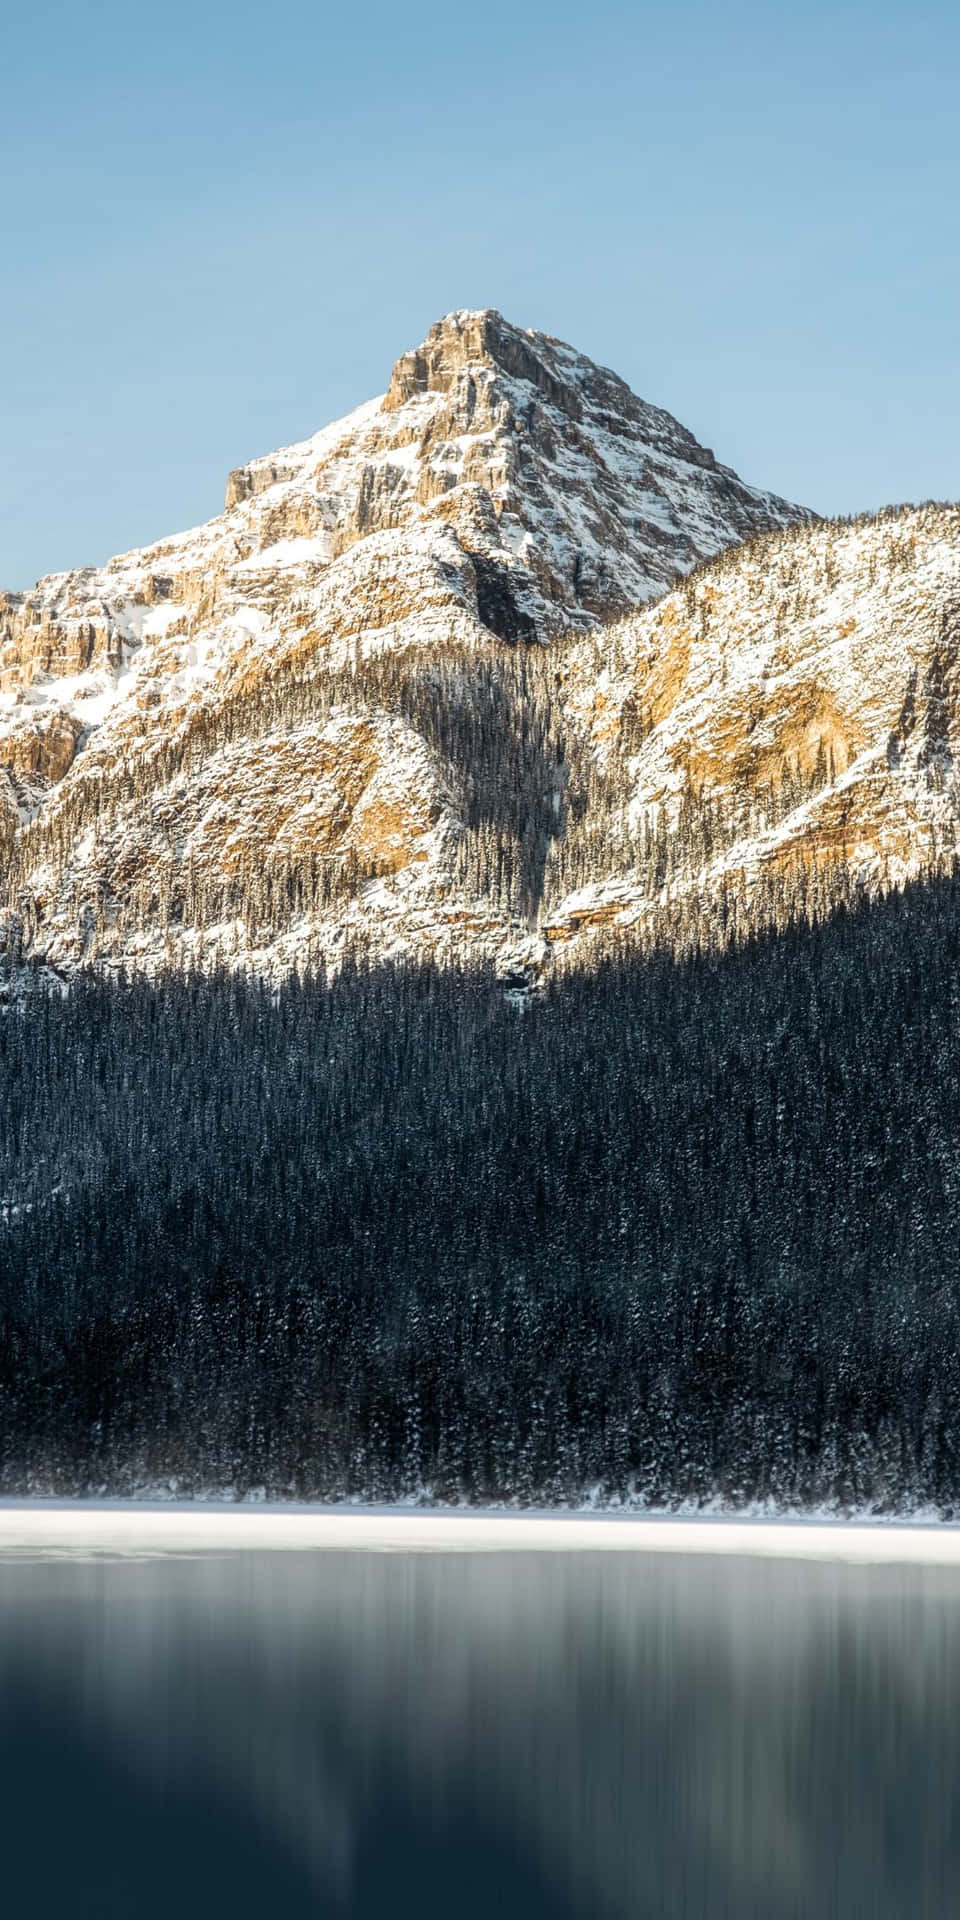 Pixel 3 Vinter Baggrunds bjerg oplyst Med Solskin